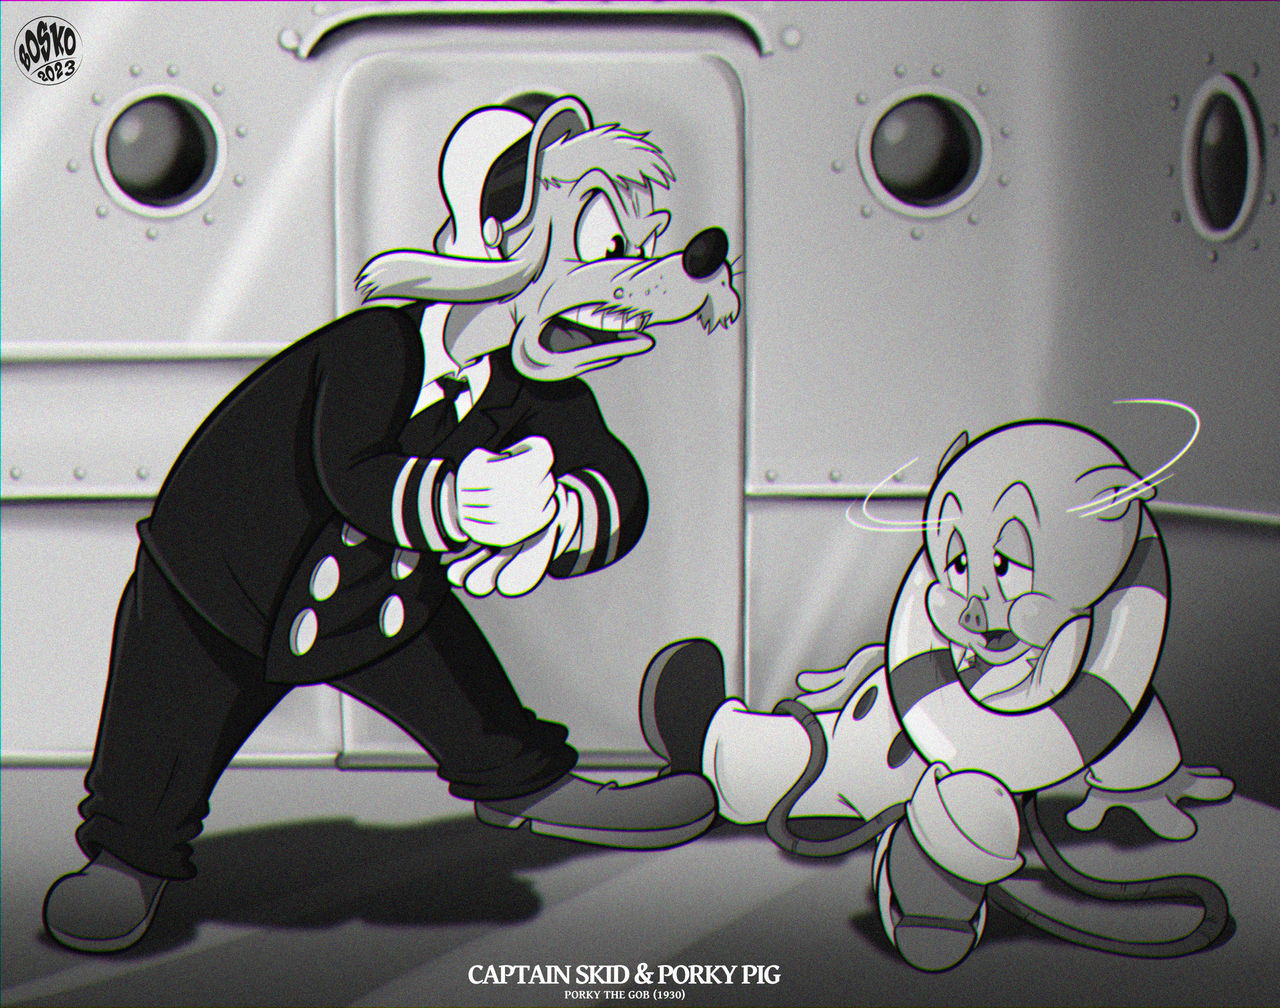 1938 - Porky the Gob
